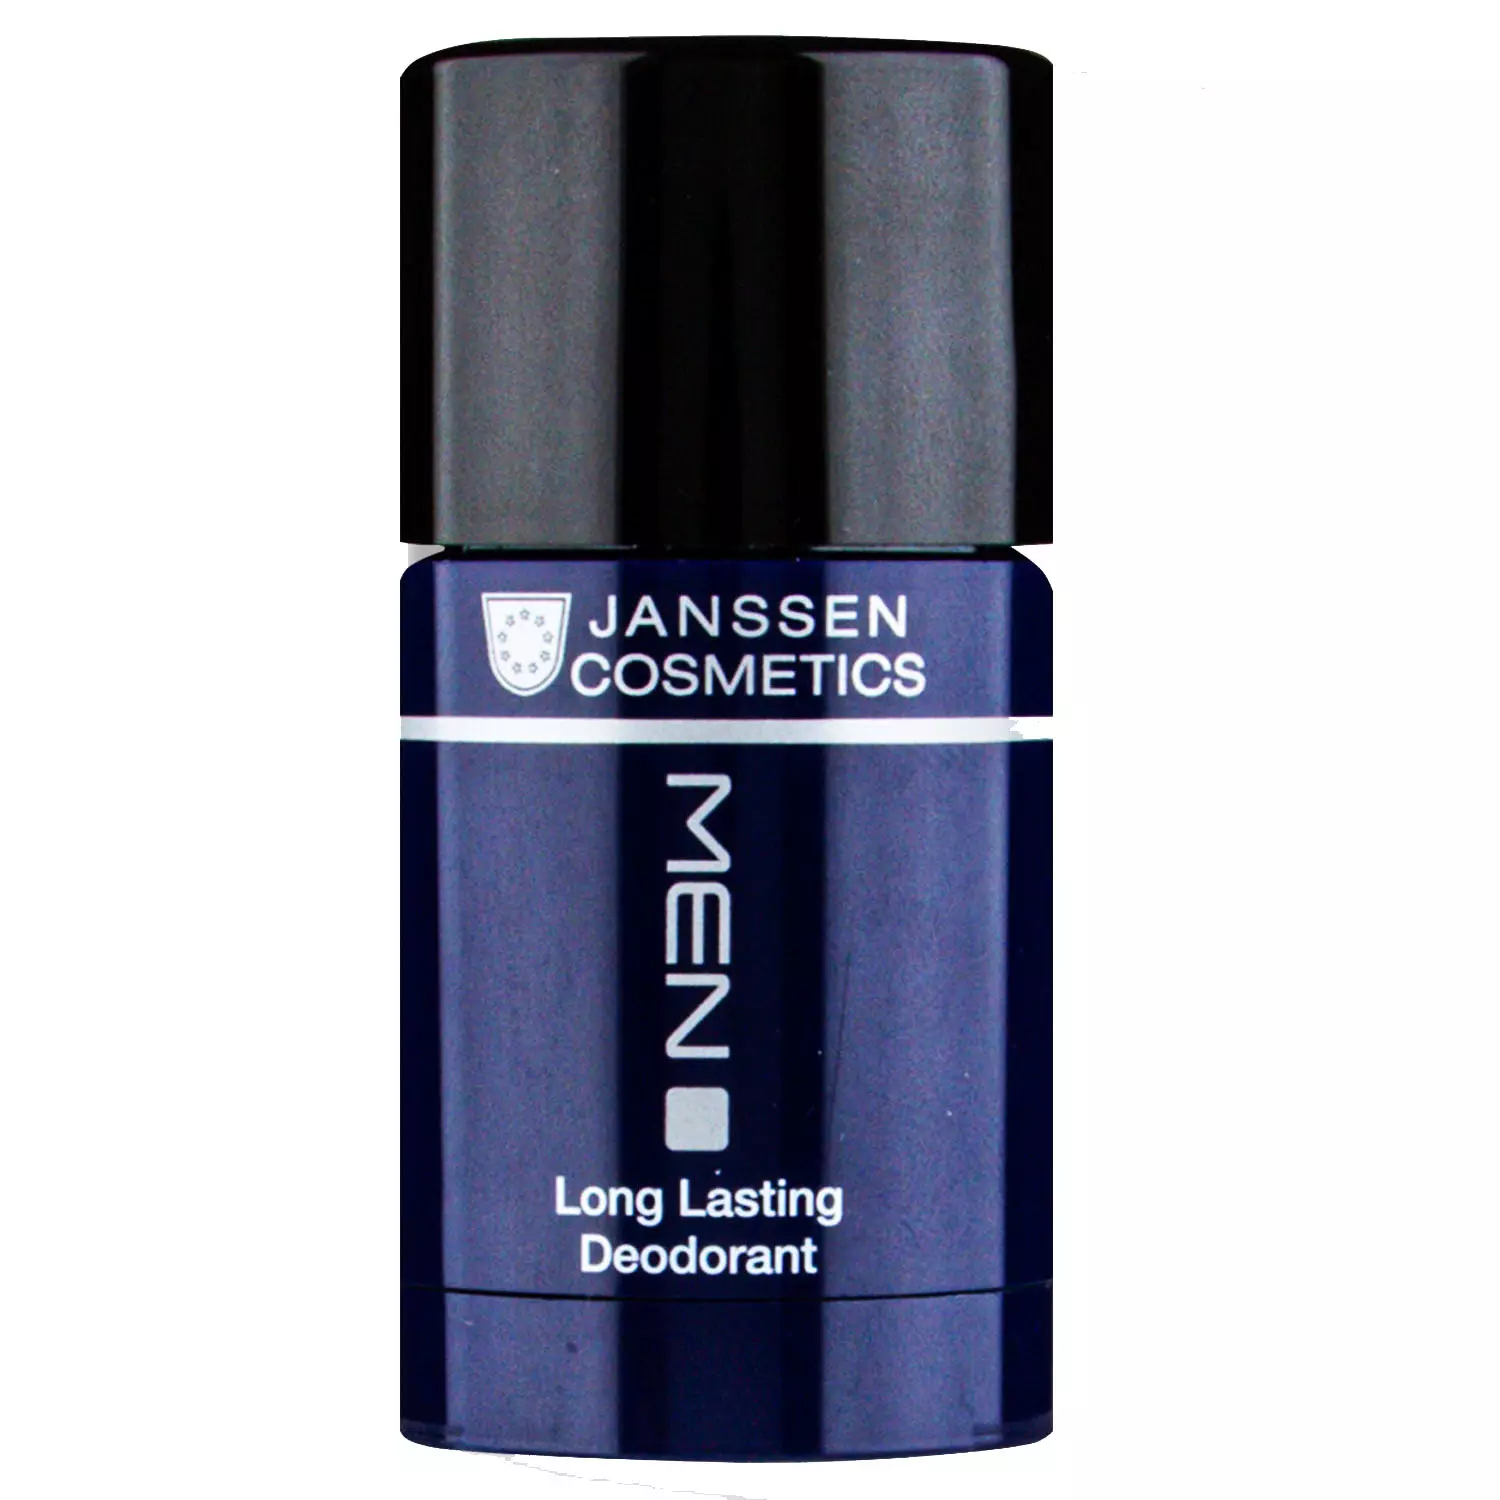 Дезодорант длительного действия Long Lasting Deodorant, 30 мл Janssen Cosmetics (Германия) купить по цене 2 185 руб.